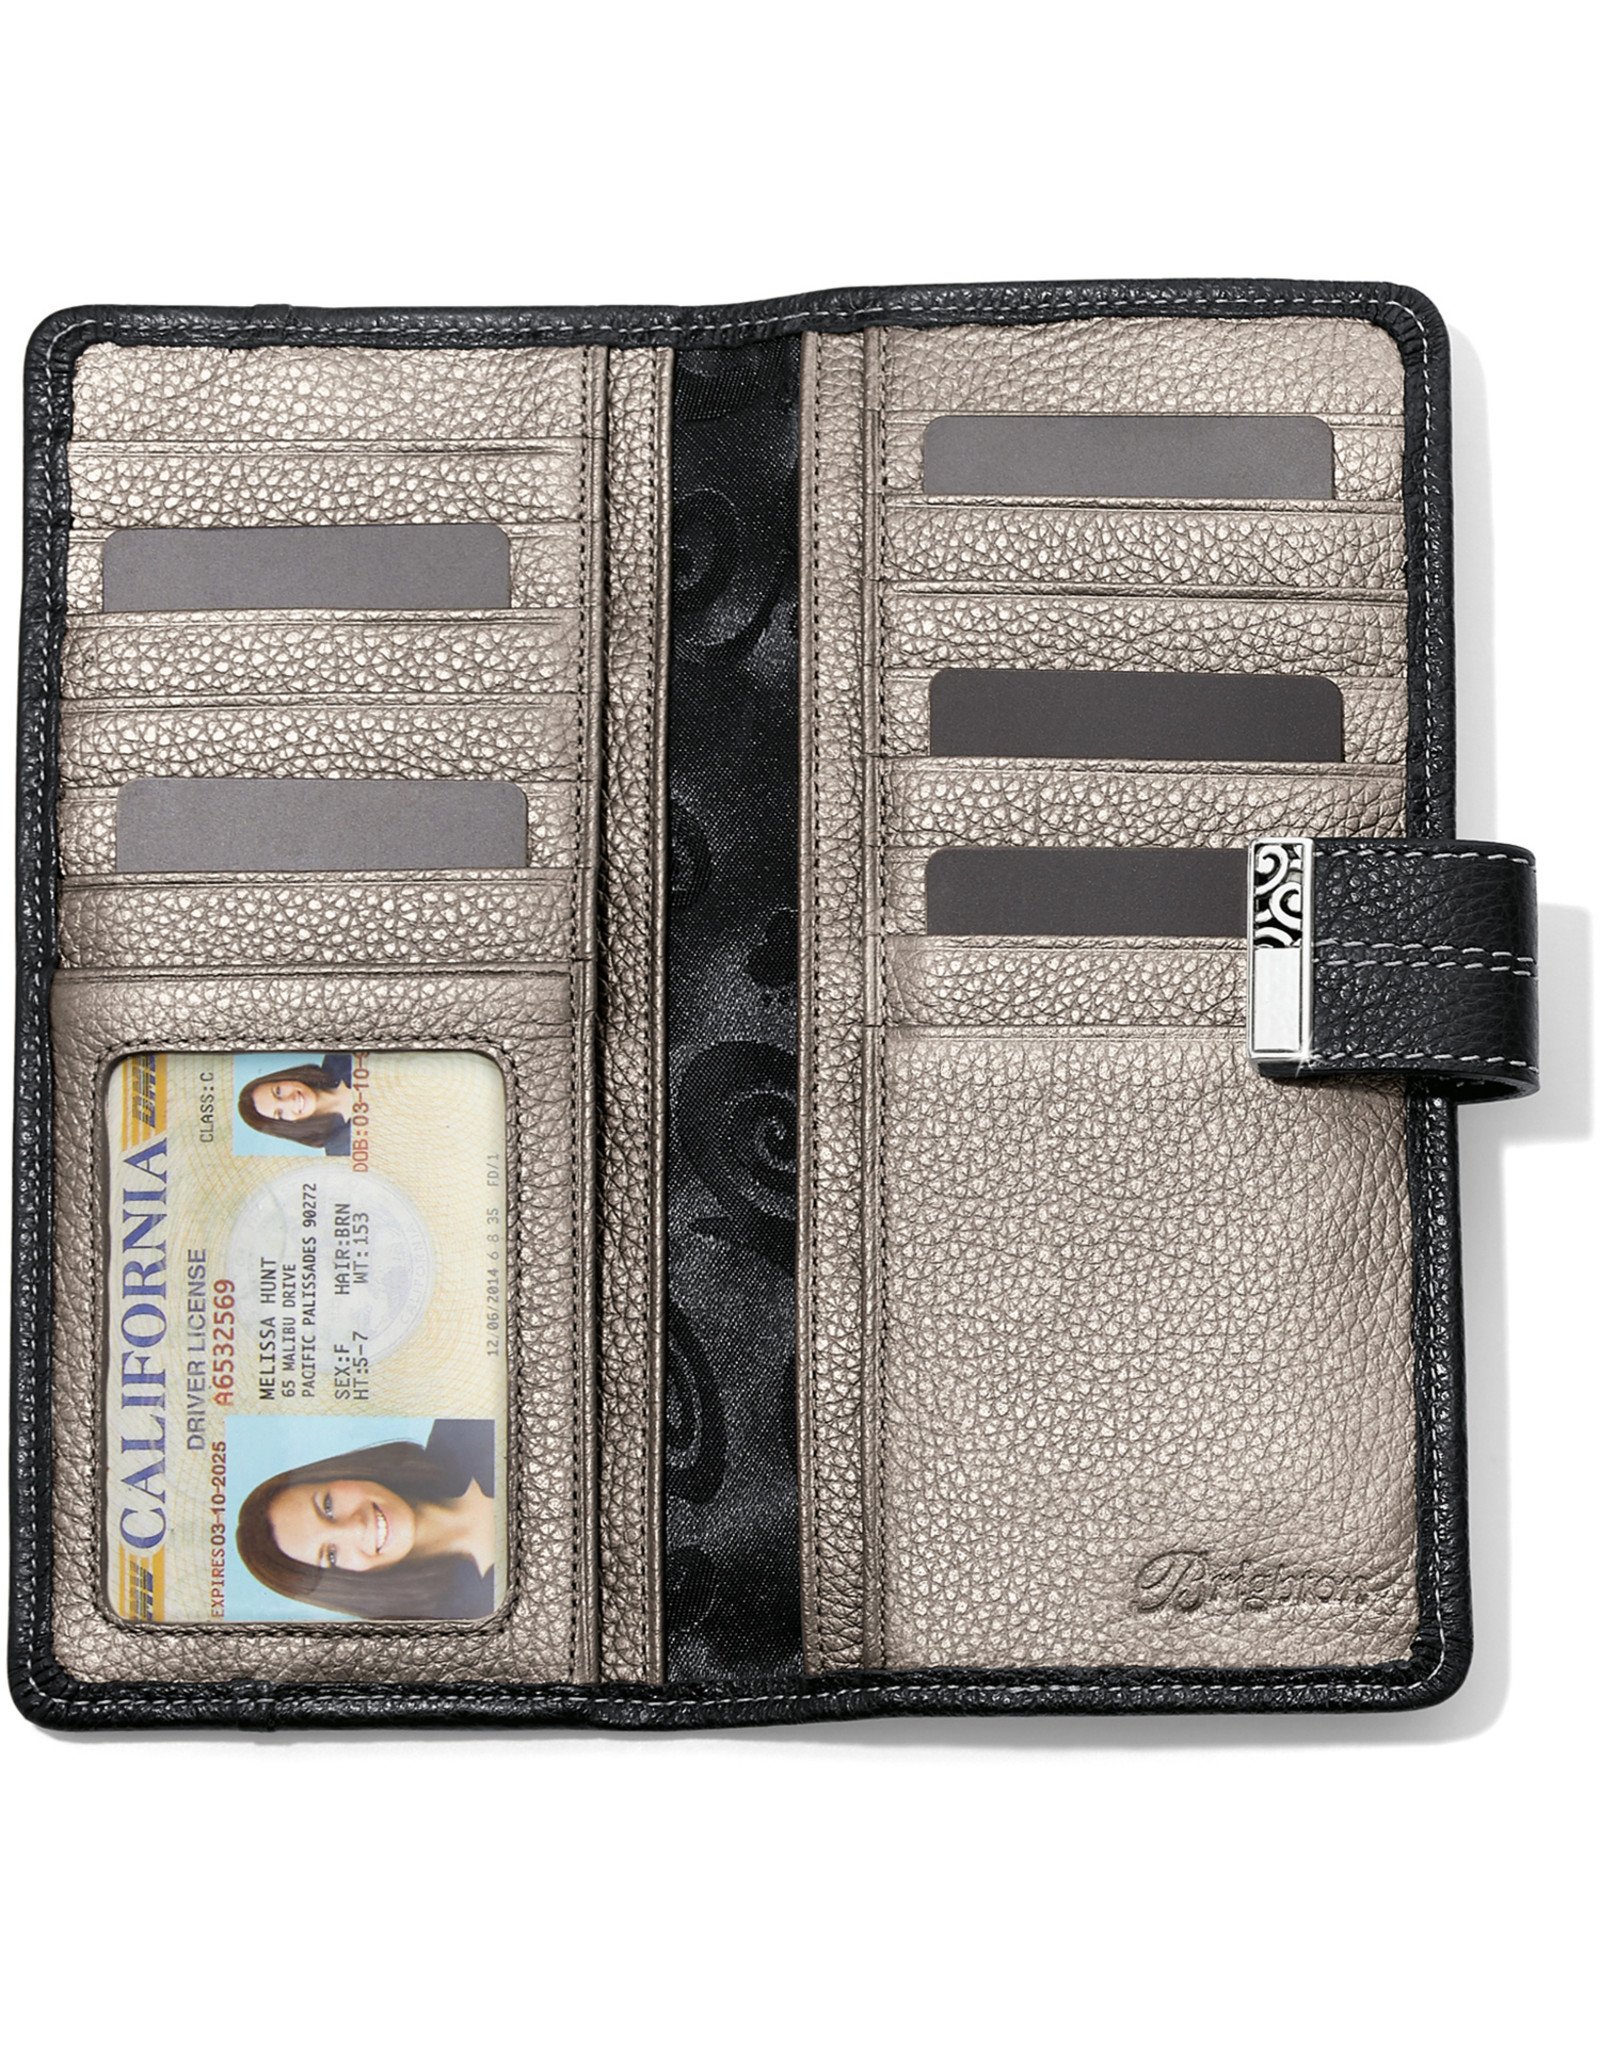 Brighton Brighton T35133 Barbados Large Pocket Wallet Black